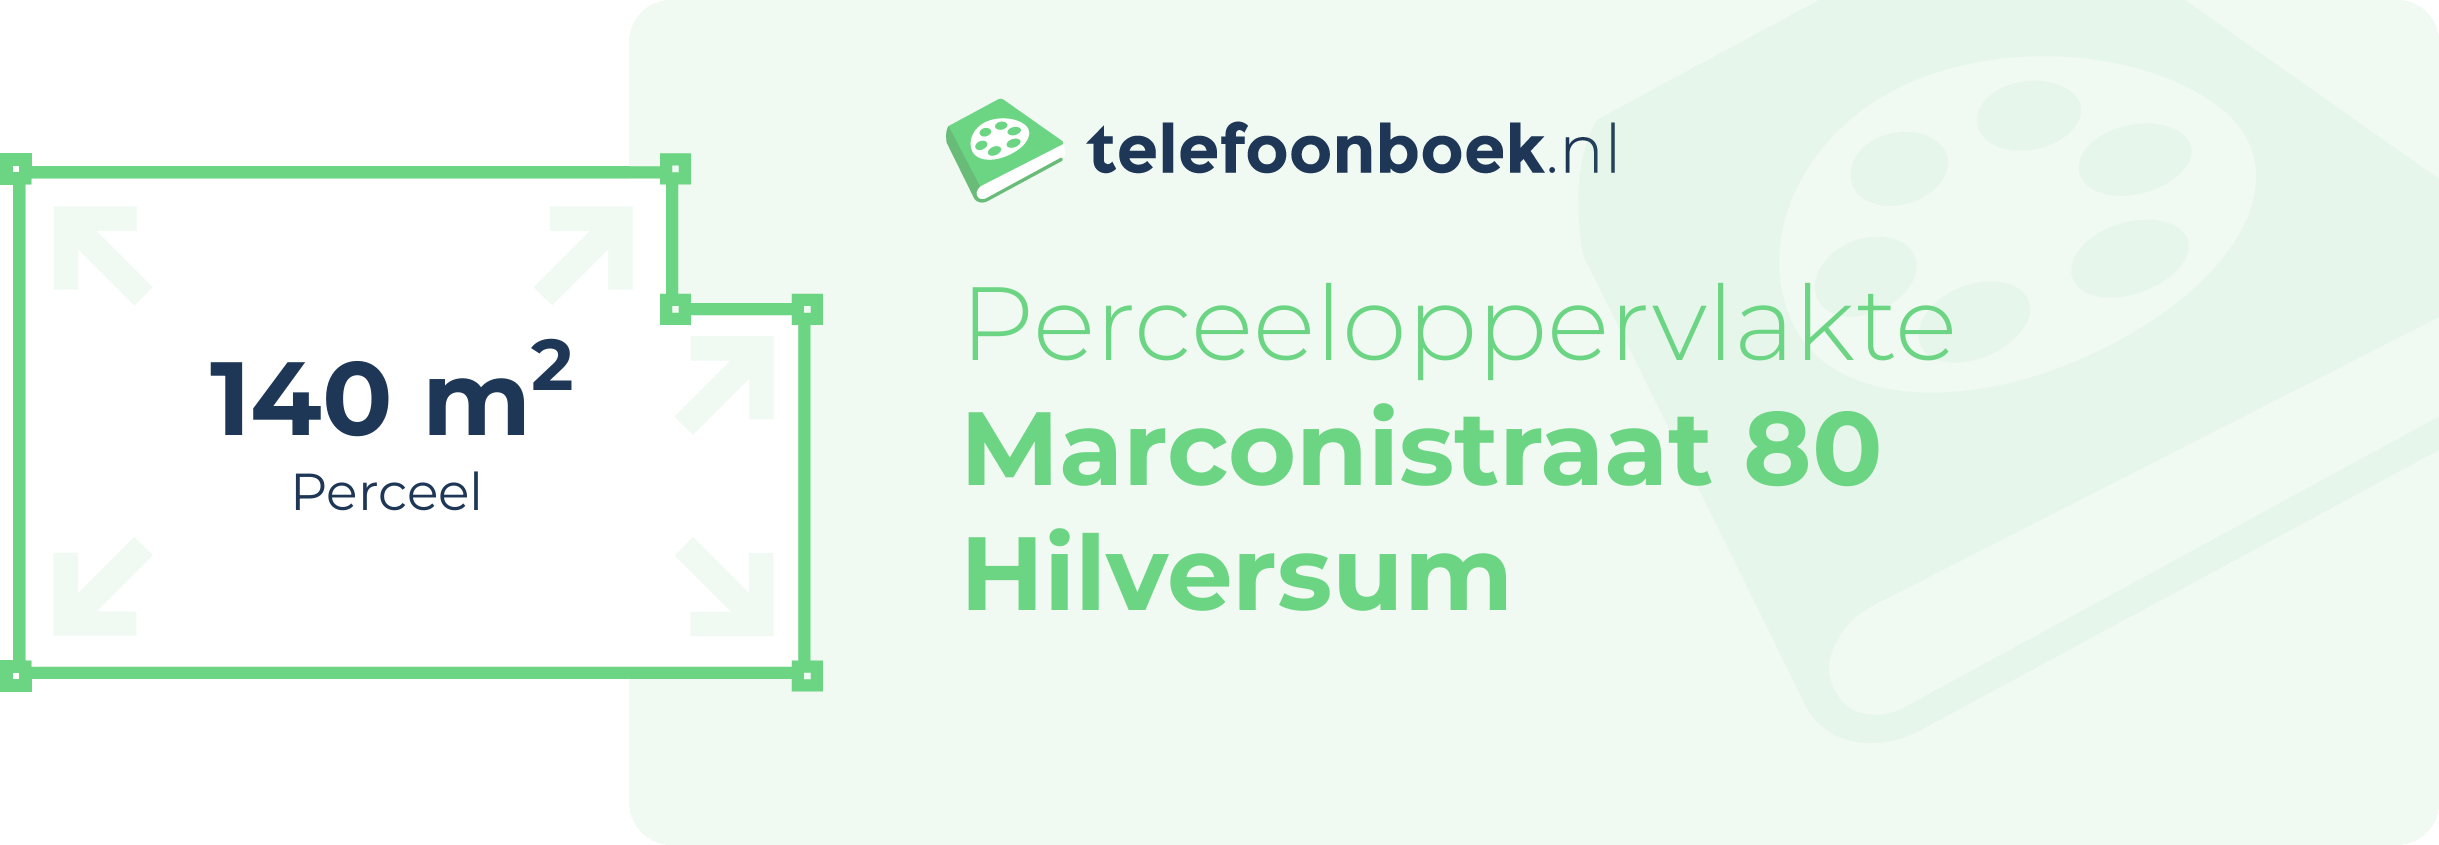 Perceeloppervlakte Marconistraat 80 Hilversum